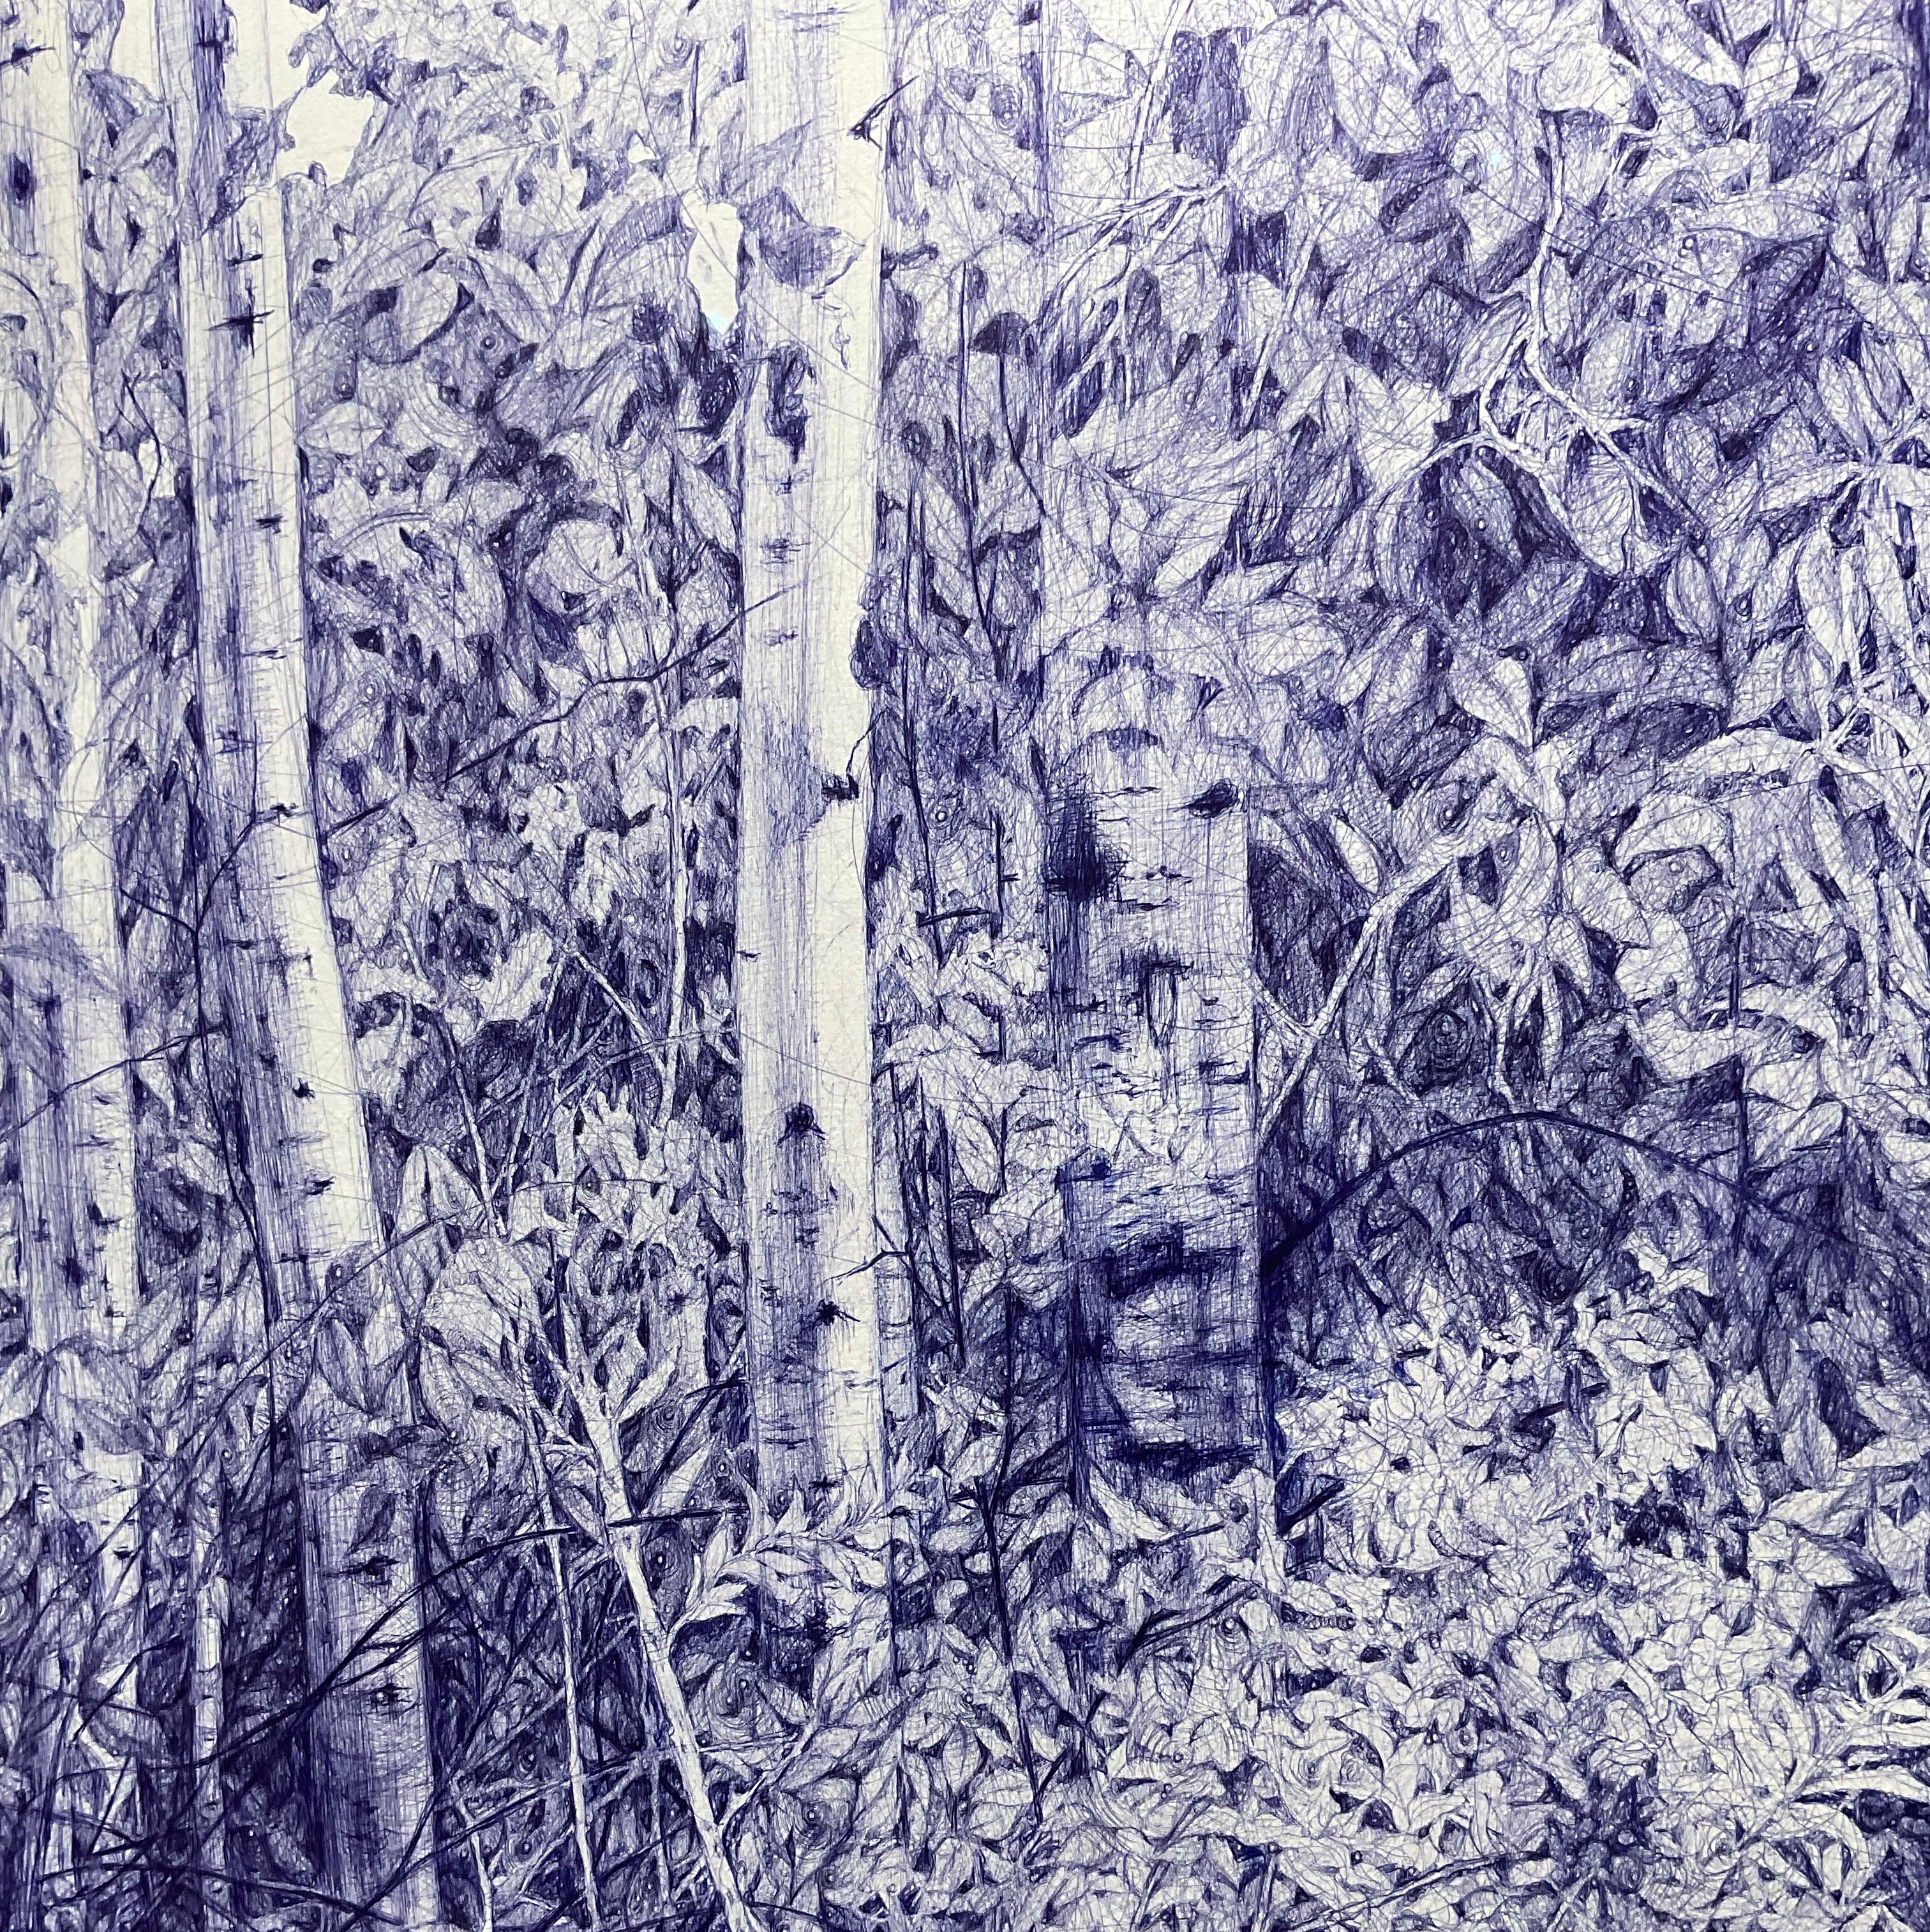 Yield and Overcome (Archivdruck eines blauen Ball Point Pen Forest Landscape) – Print von Linda Newman Boughton